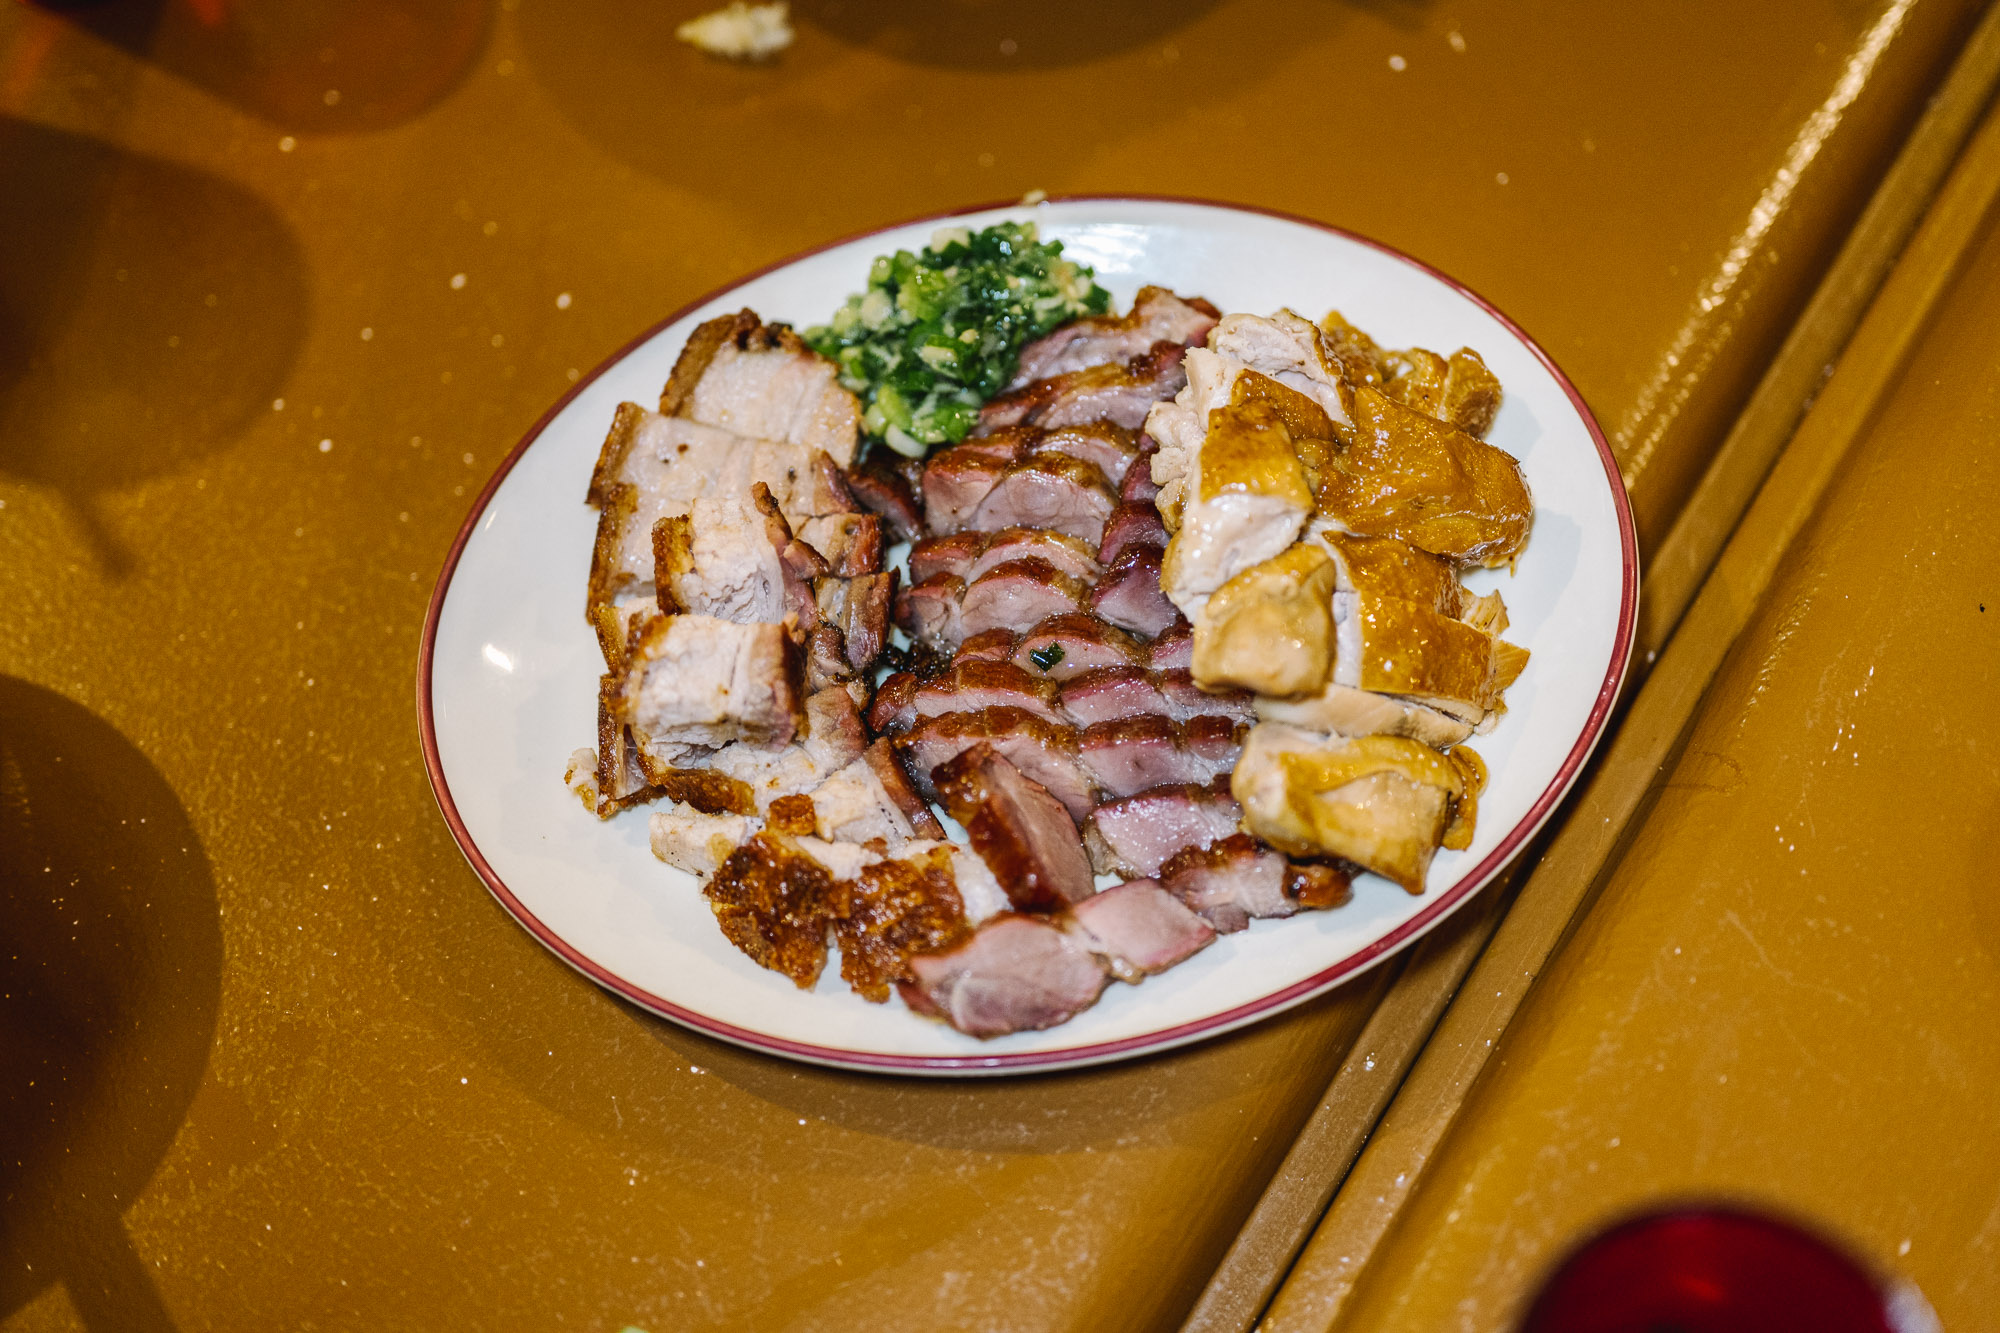 Montreal Chinatown Best Food Tour - Meilleur tour guidé culinaire du Quartier Chinois de Montréal